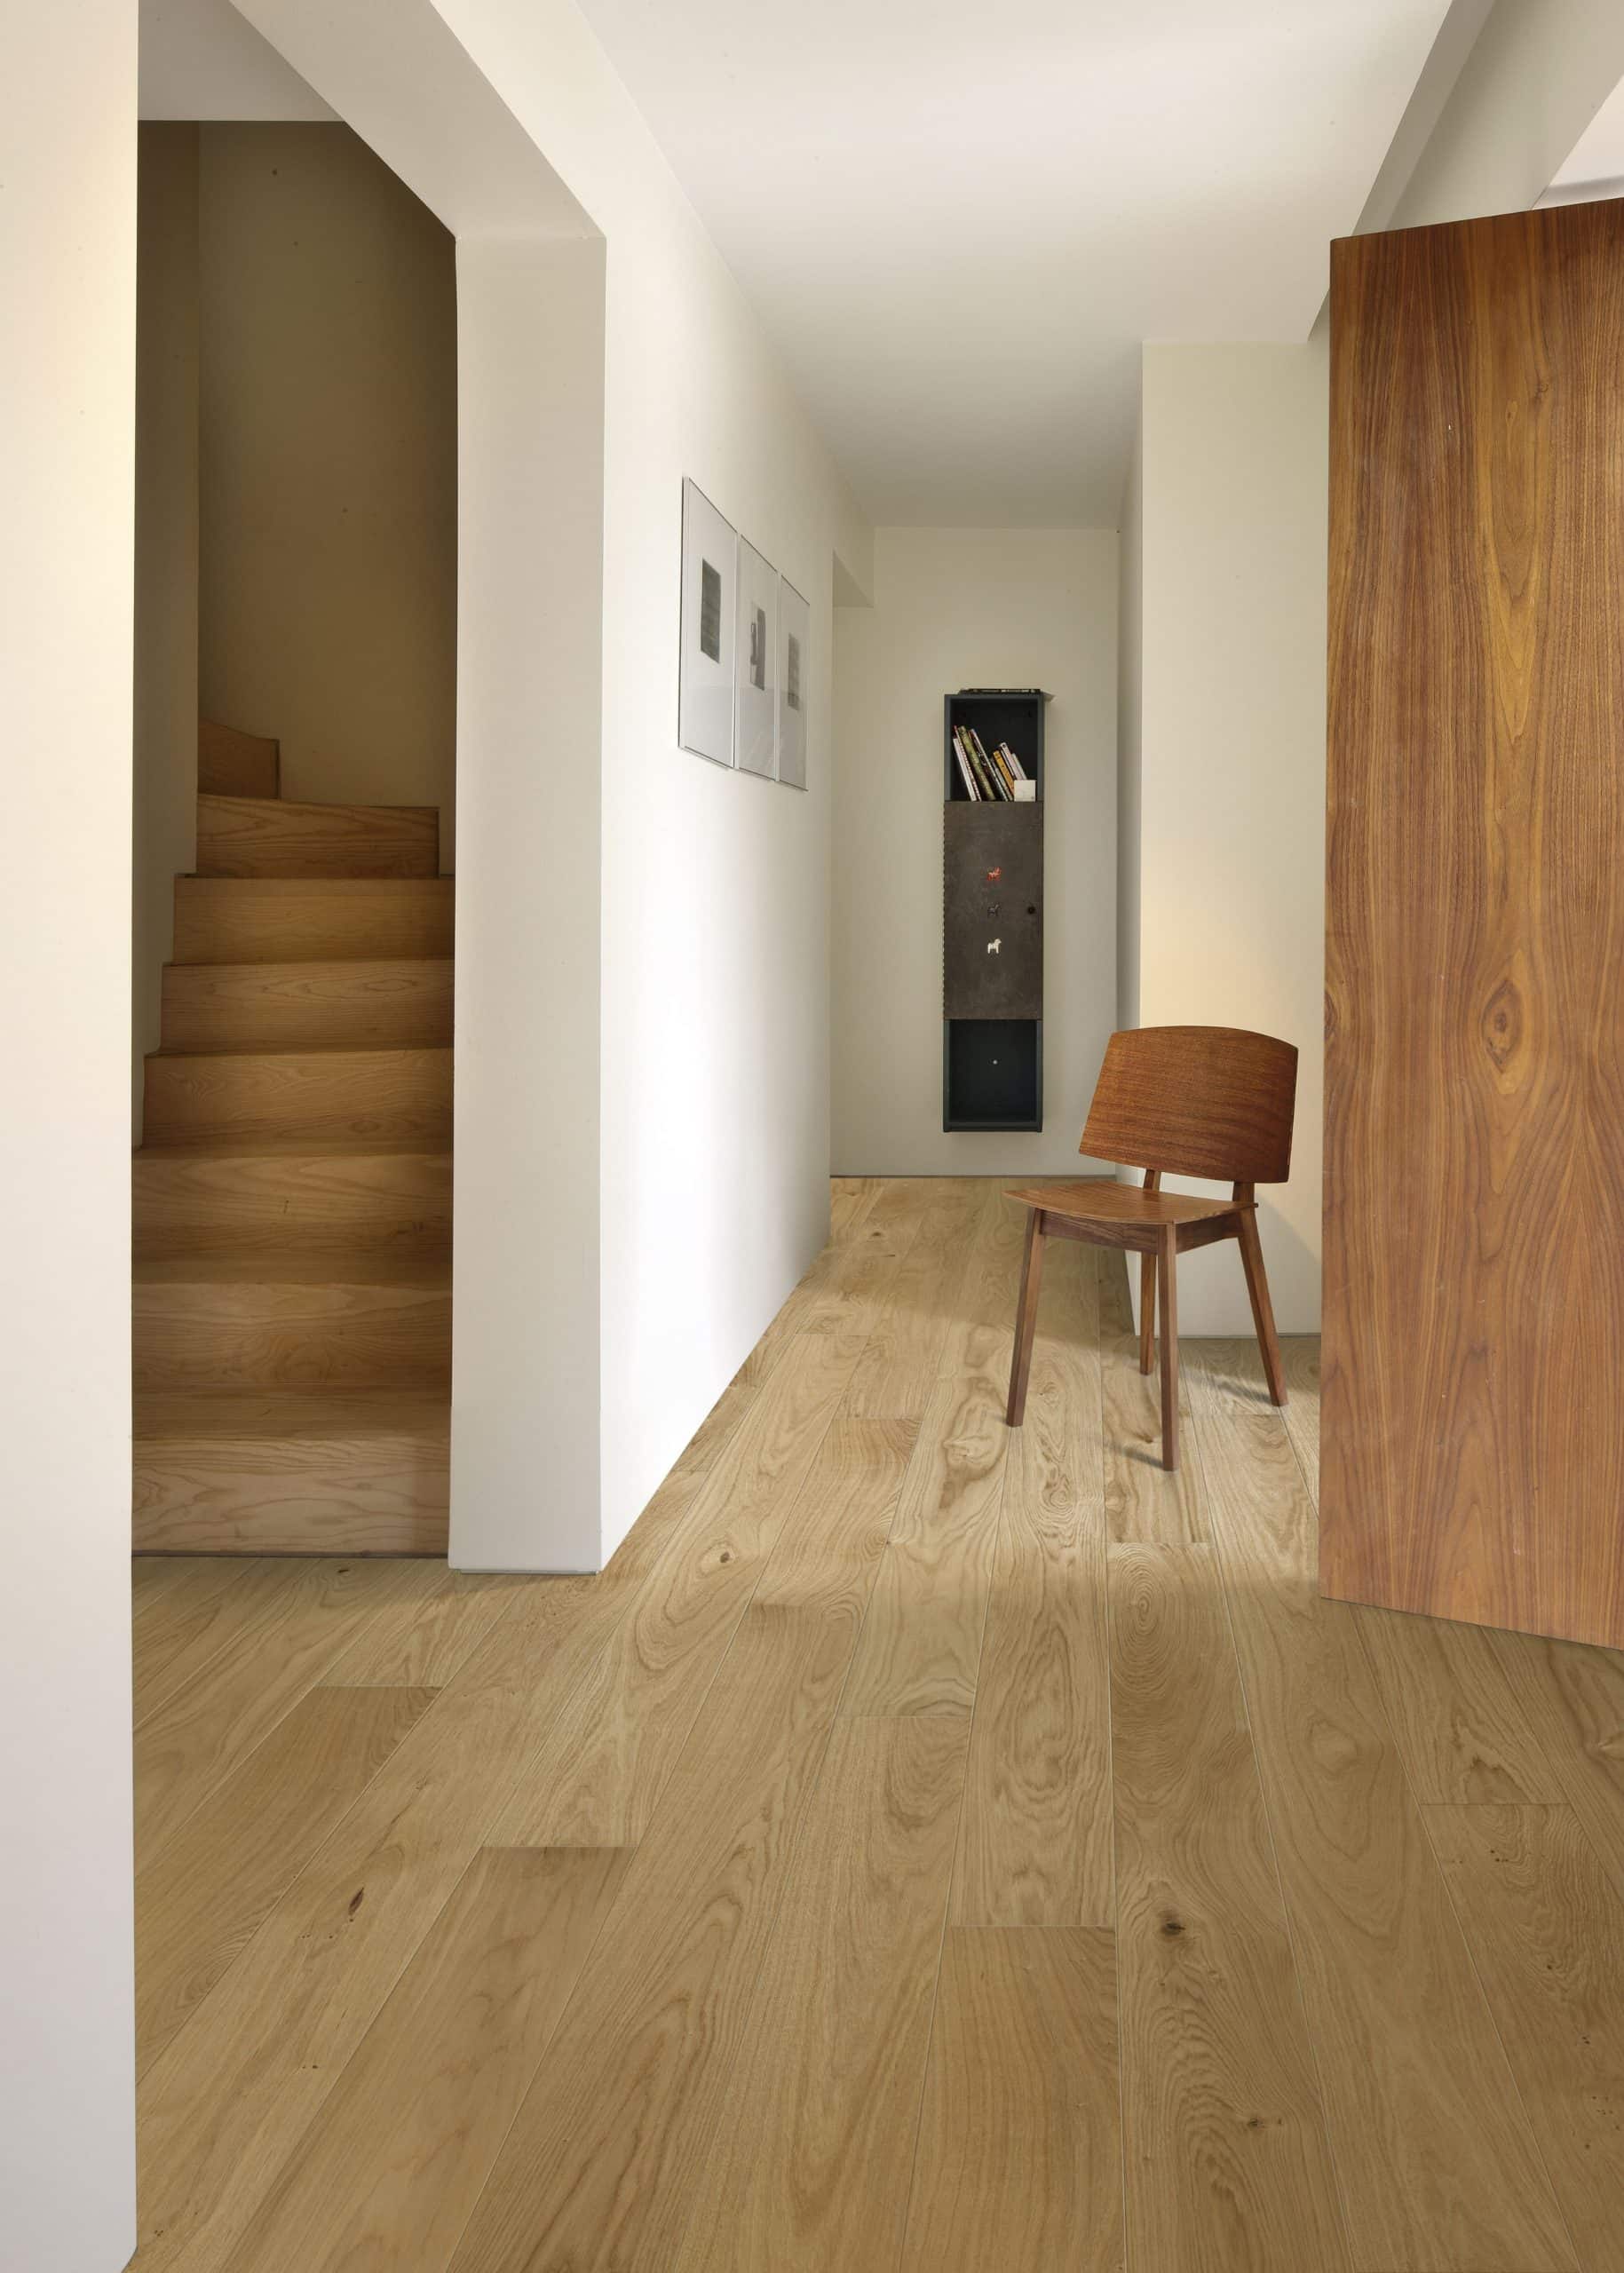 Design de couloir en bois